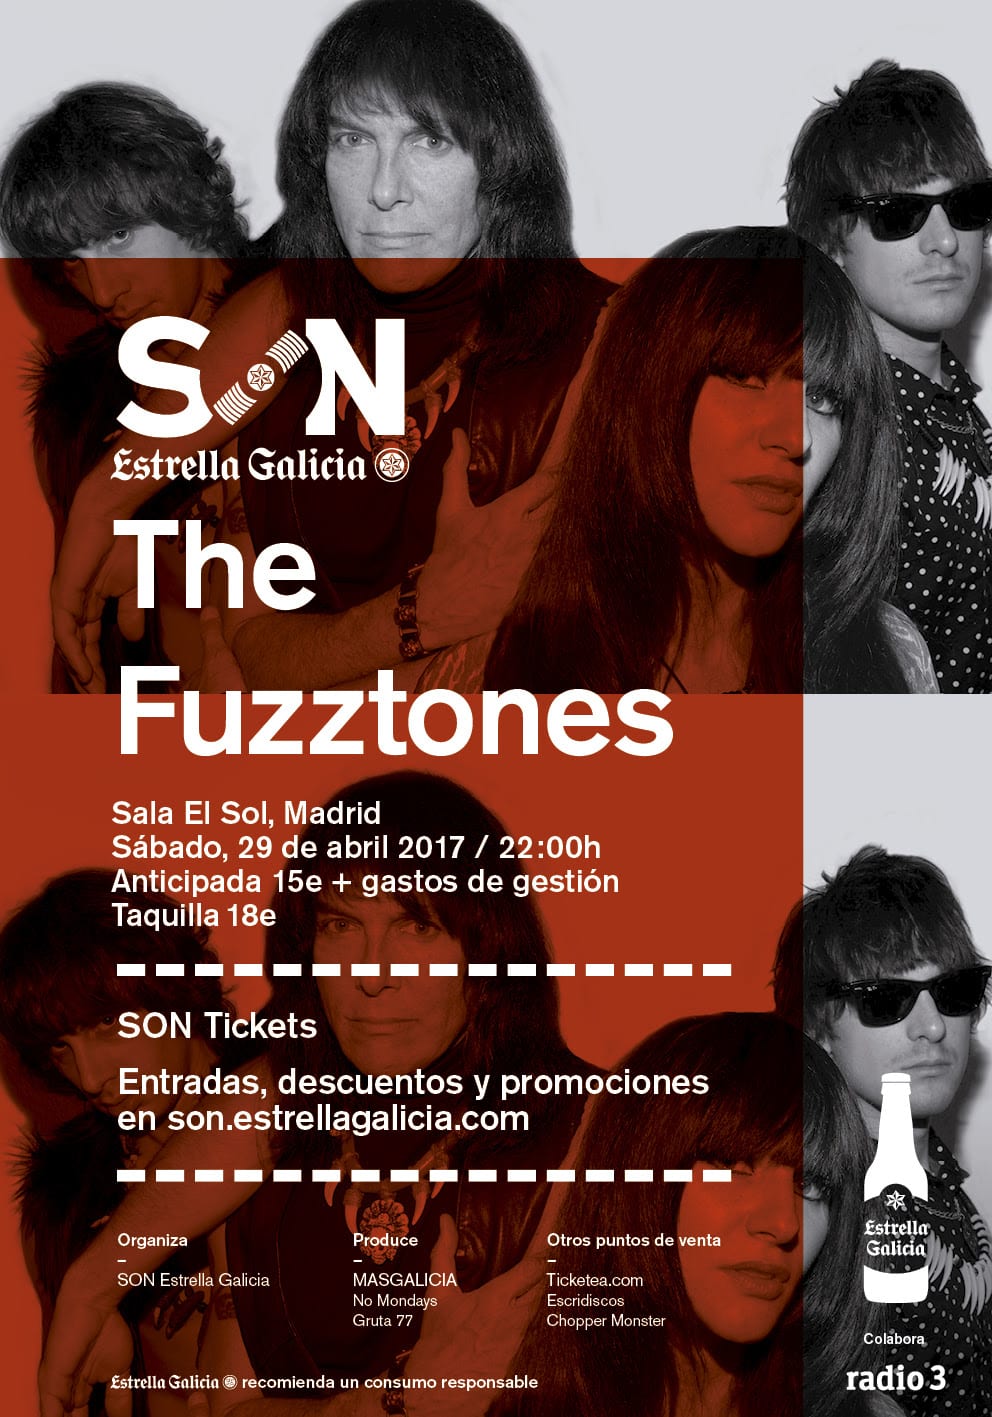 The Fuzztones en Madrid el sábado 29 de abril en El Sol